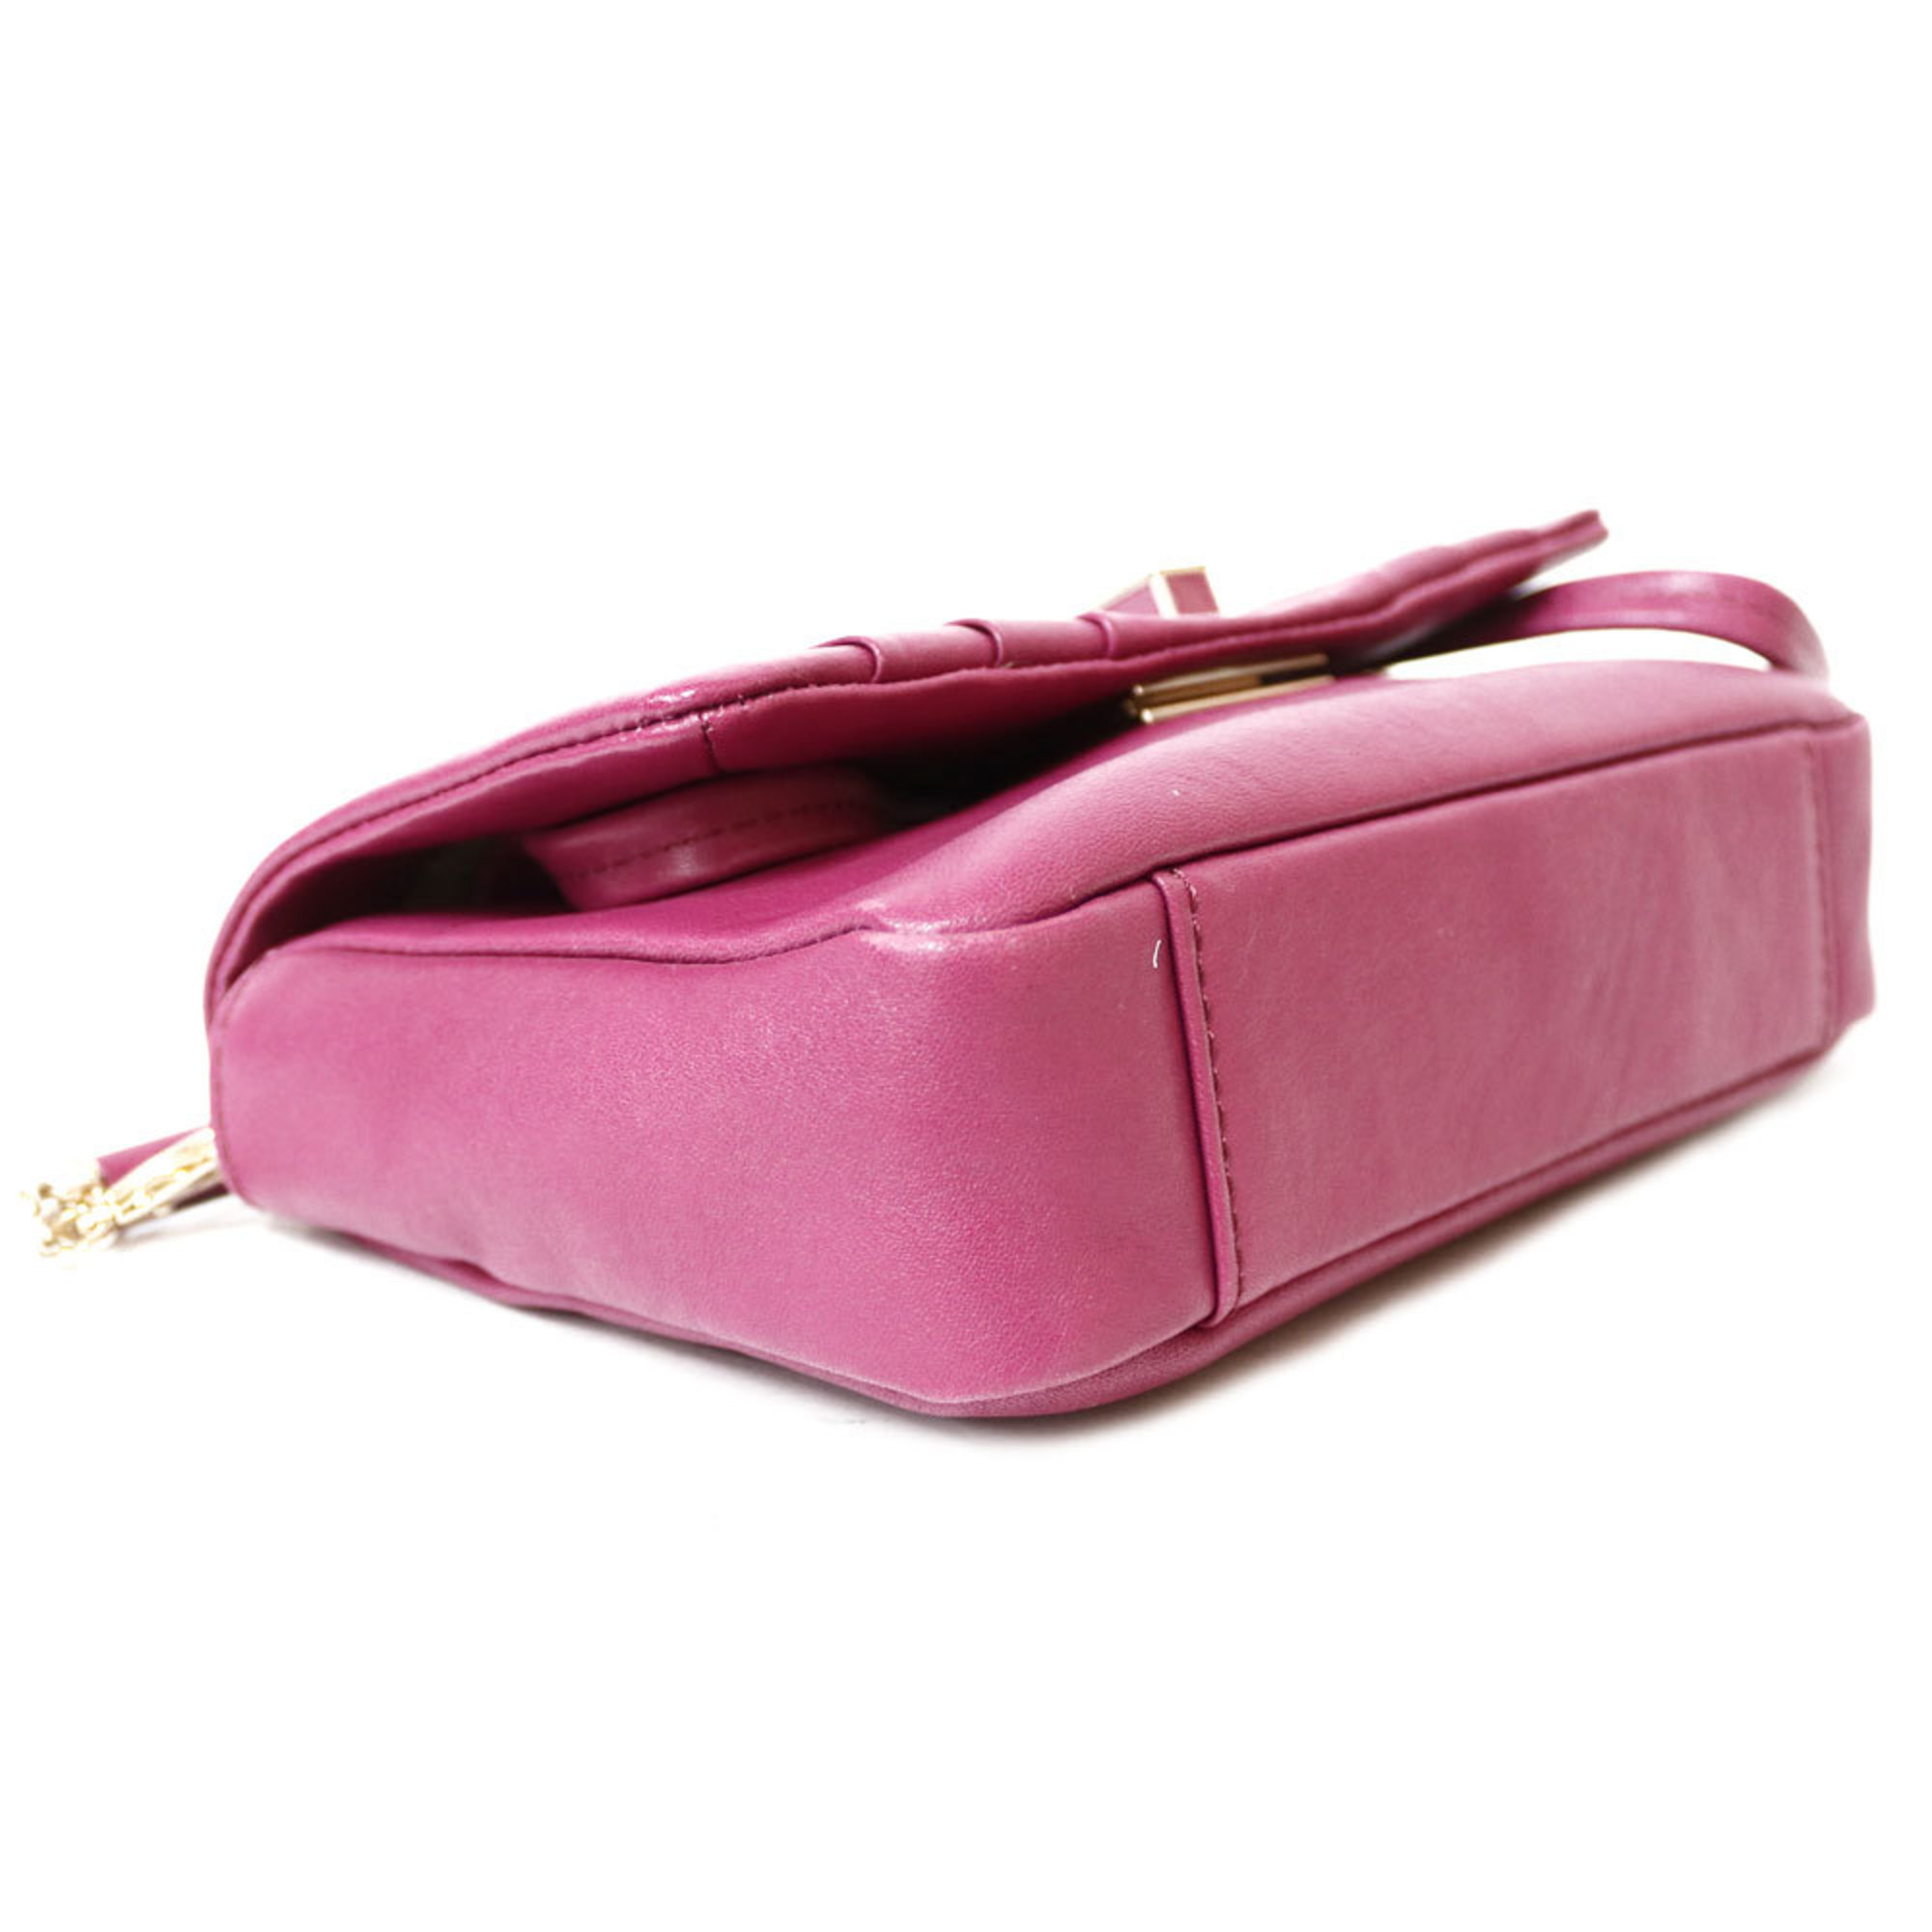 Anya Hindmarch Shoulder Bag Gracie Pink Ladies Leather